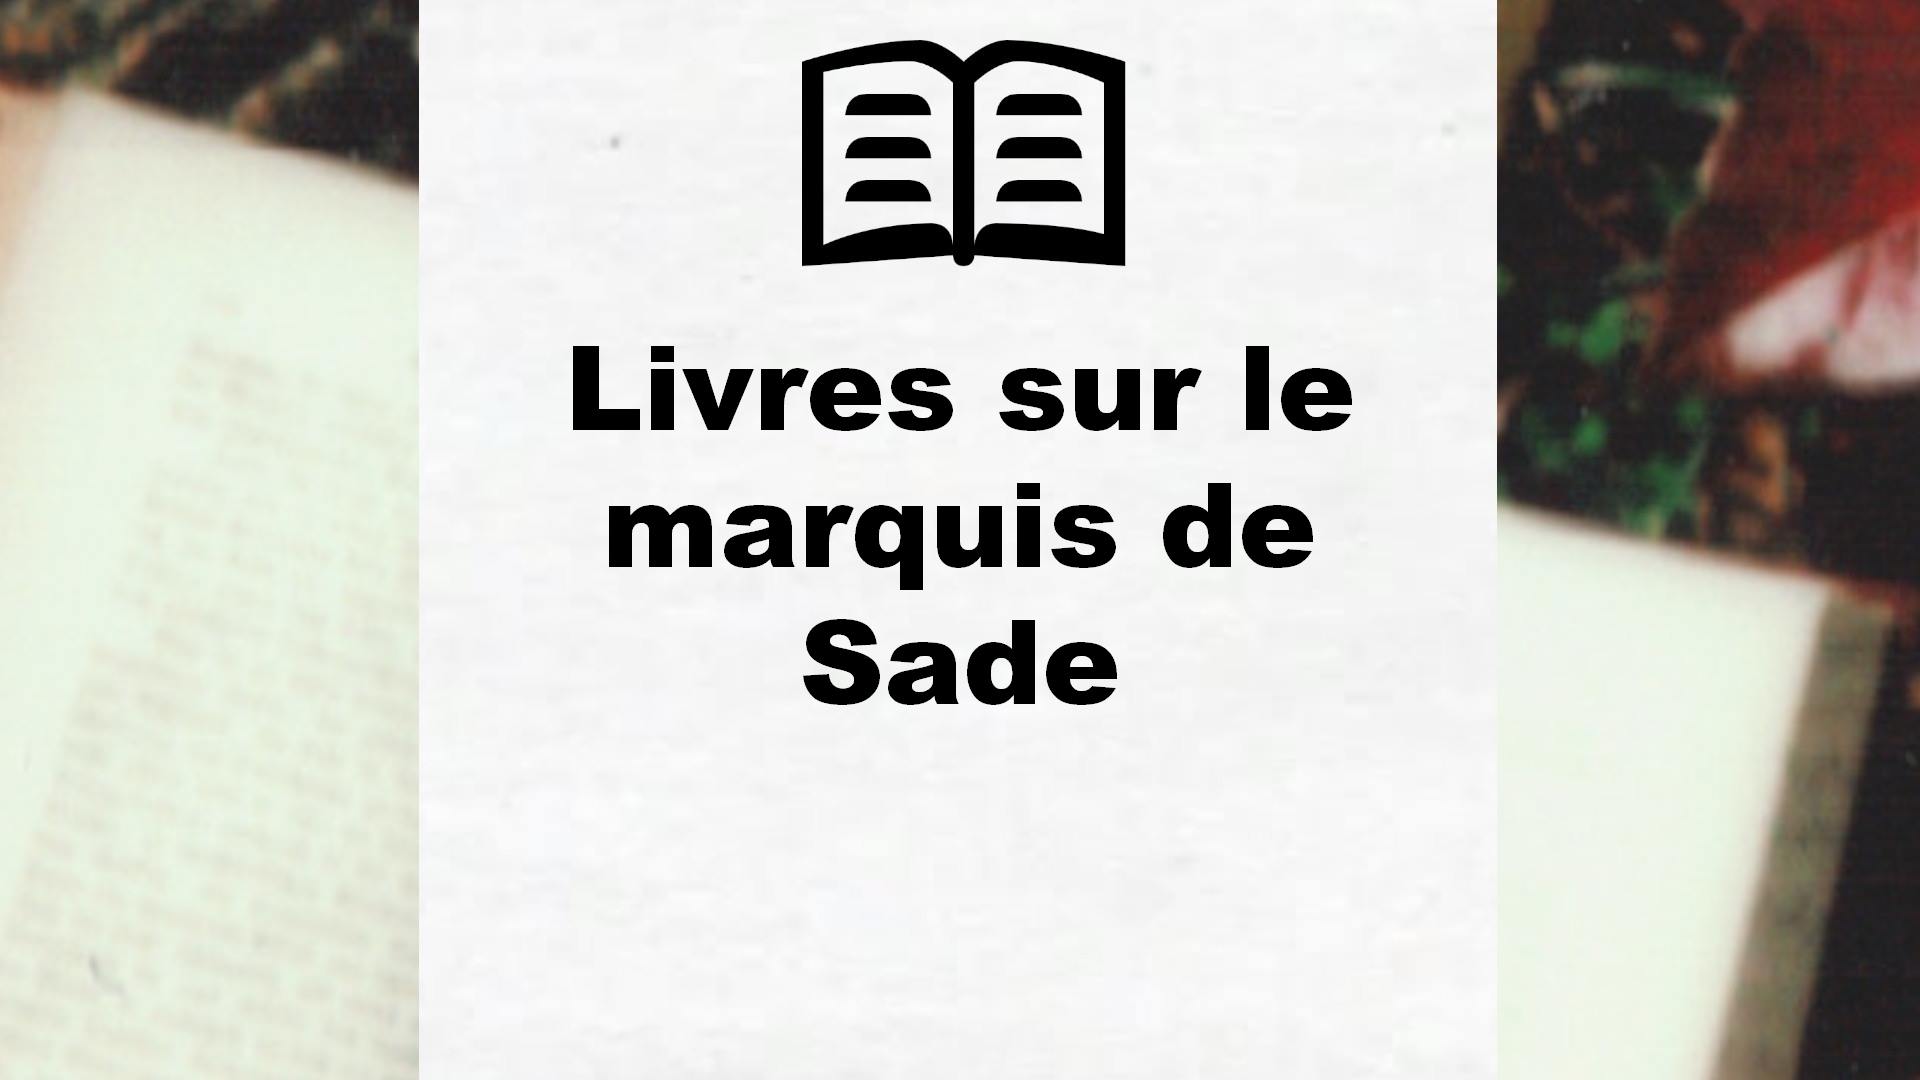 Livres sur le marquis de Sade